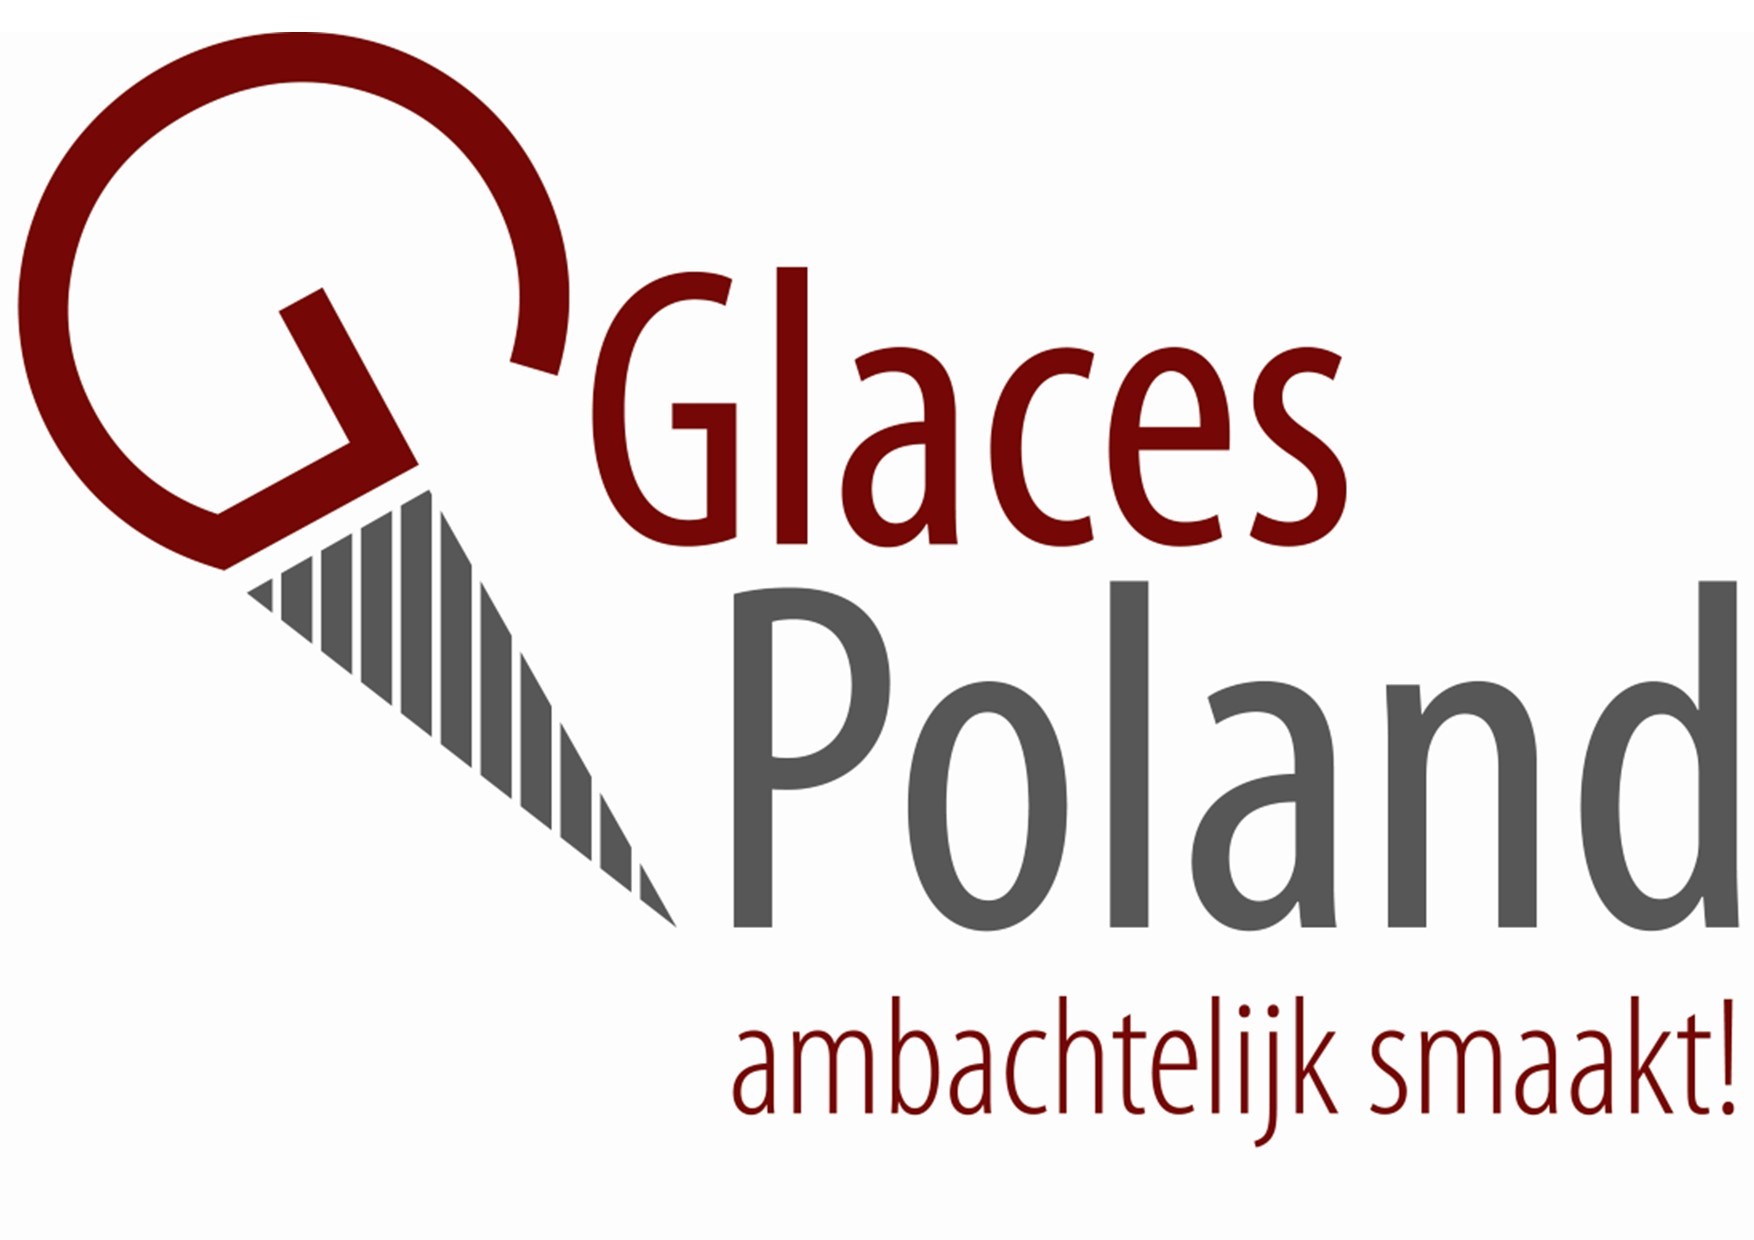 Glaces Poland